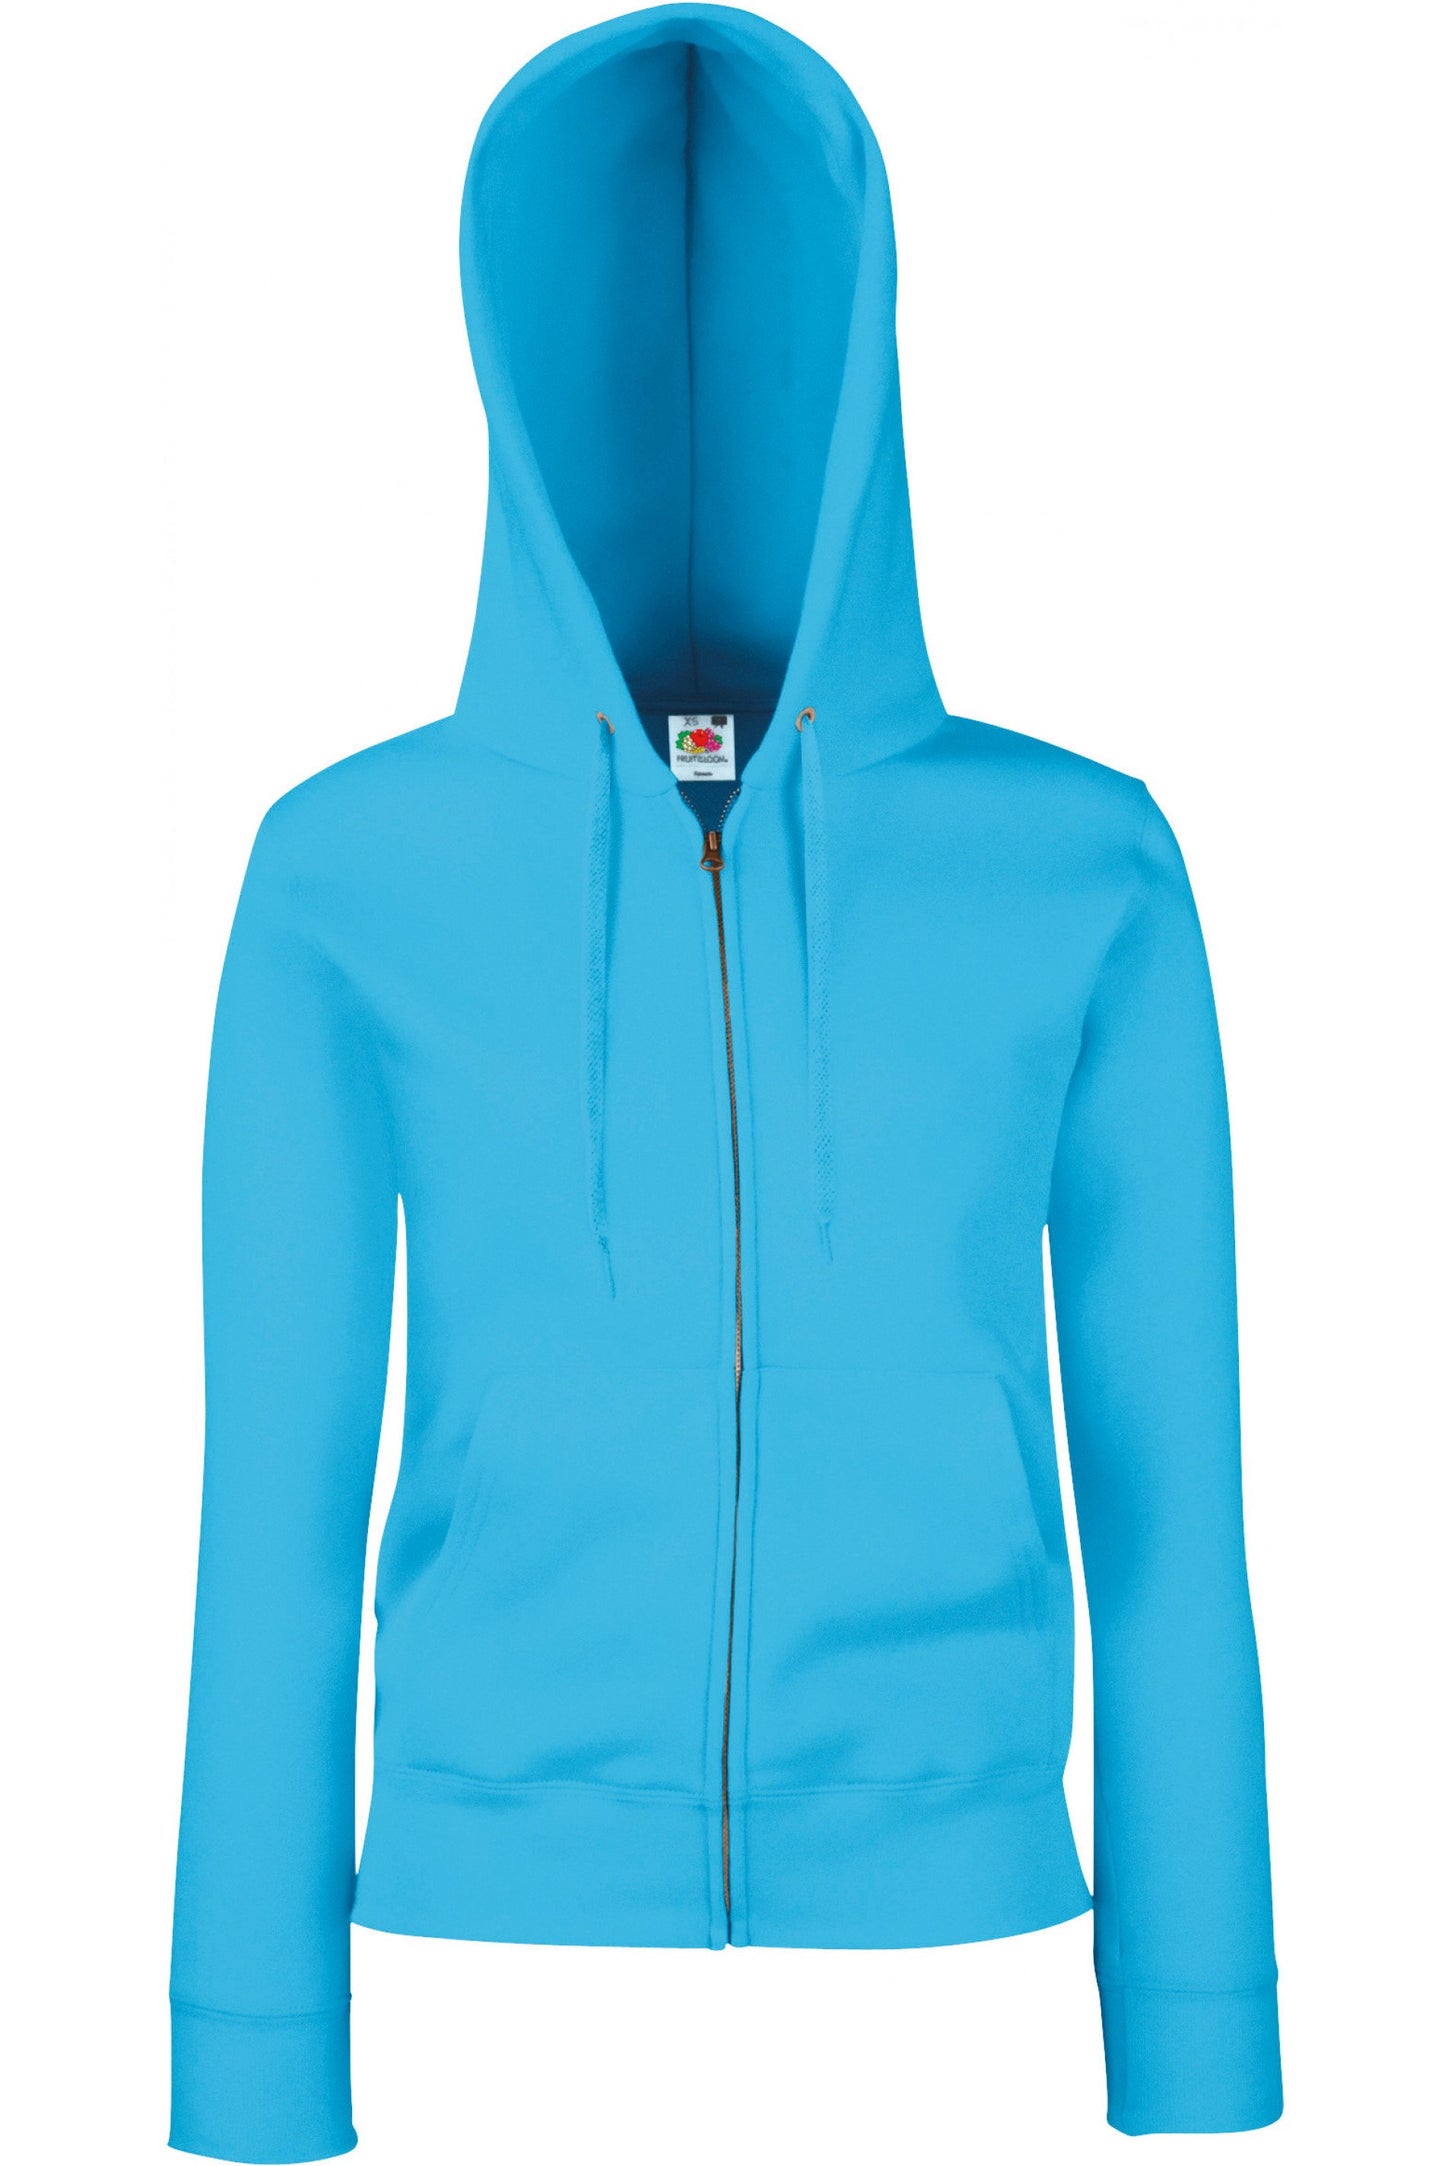 SC62118 - Sweat-shirt femme zippé capuche Premium